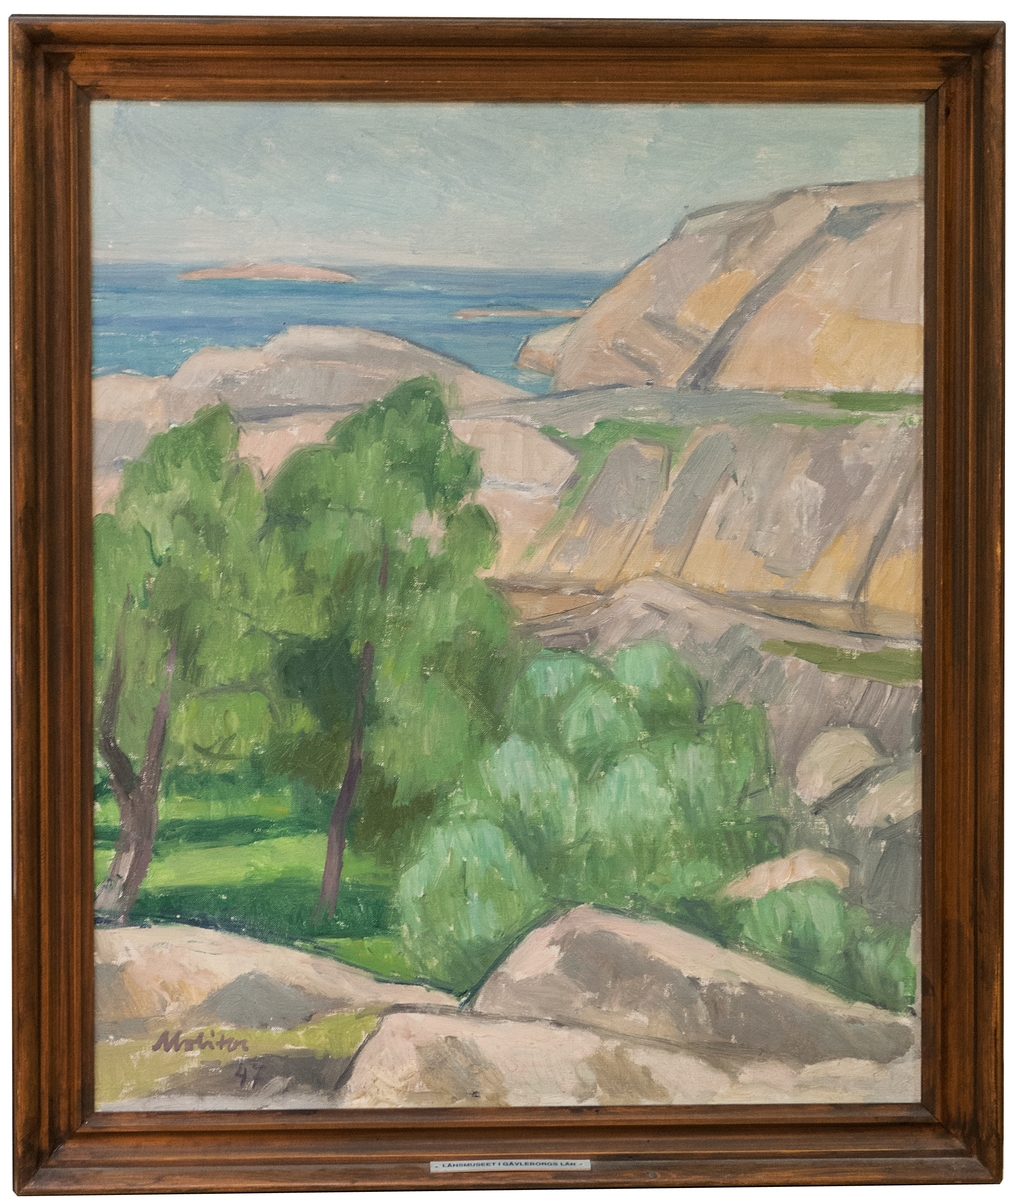 Oljemålning på duk, "Varm dag" av Oscar Molitor, 1947. Kustlandskap med klippor och i en dalgång gröna träd.